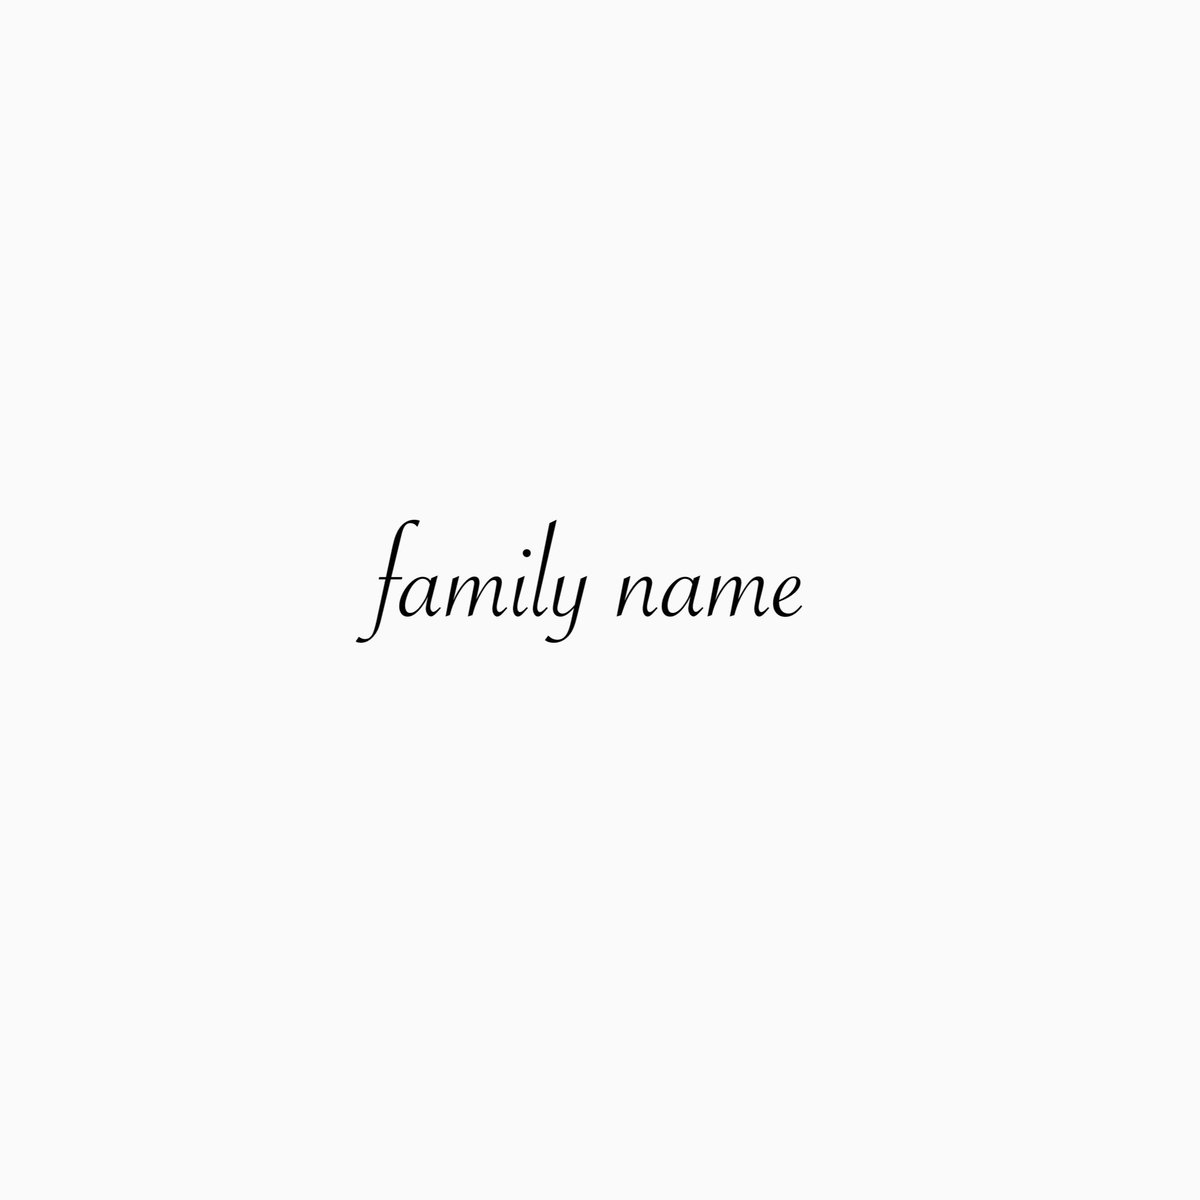 family name
①

#ダミアニャ
#SPY_FAMILY 
#スパイファミリー 